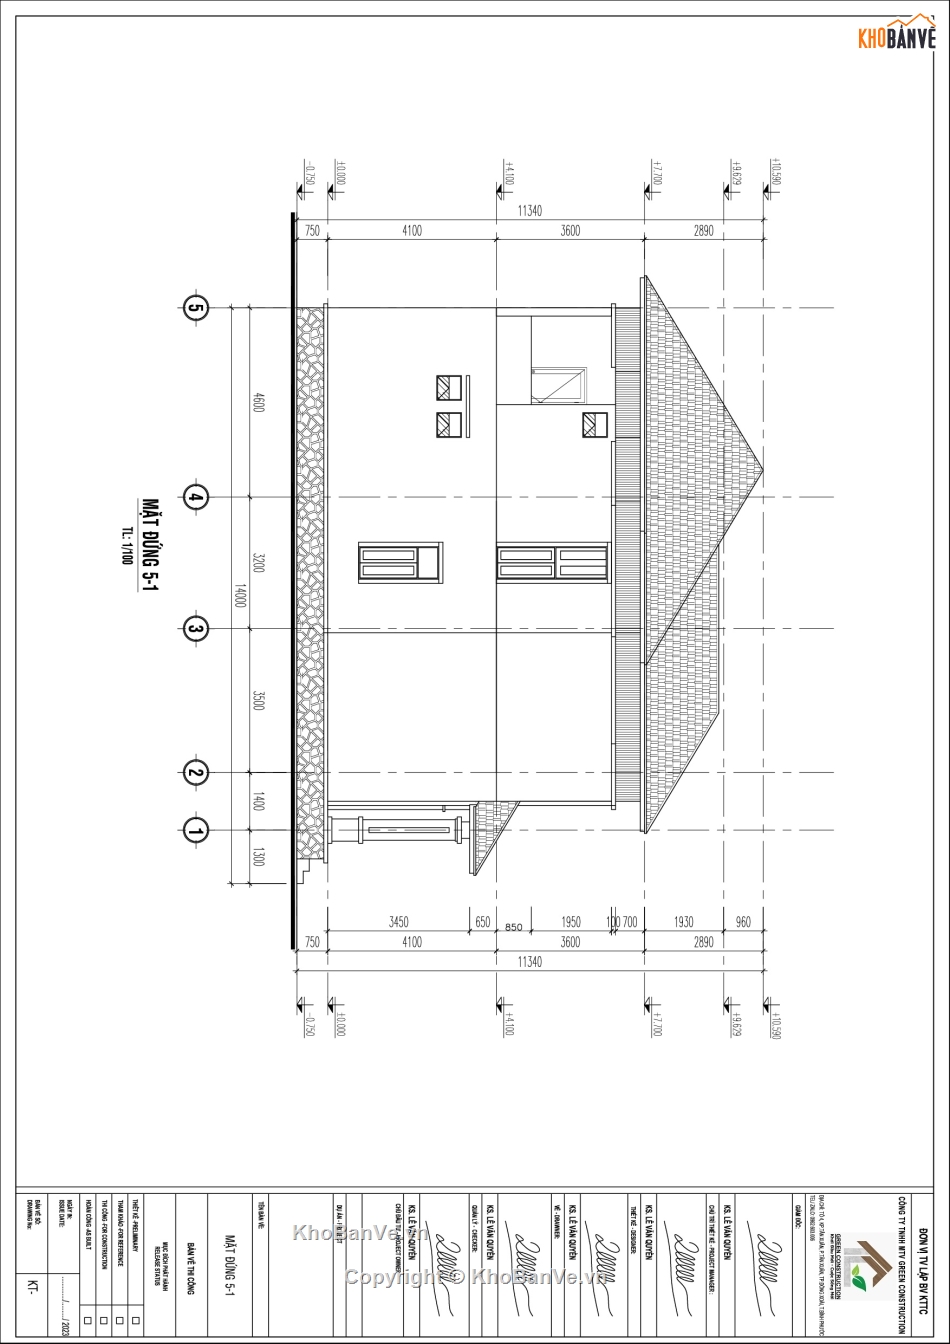 Hồ sơ thiết kế nhà mái nhật,bản vẽ thiết kế công nhà mái nhật,nhà mái nhật 150m2,nhà mái nhật 1 trệt 2 lầu,nhà mái nhật 1 trệt 2 lầu 150m2,nhà mái nhật